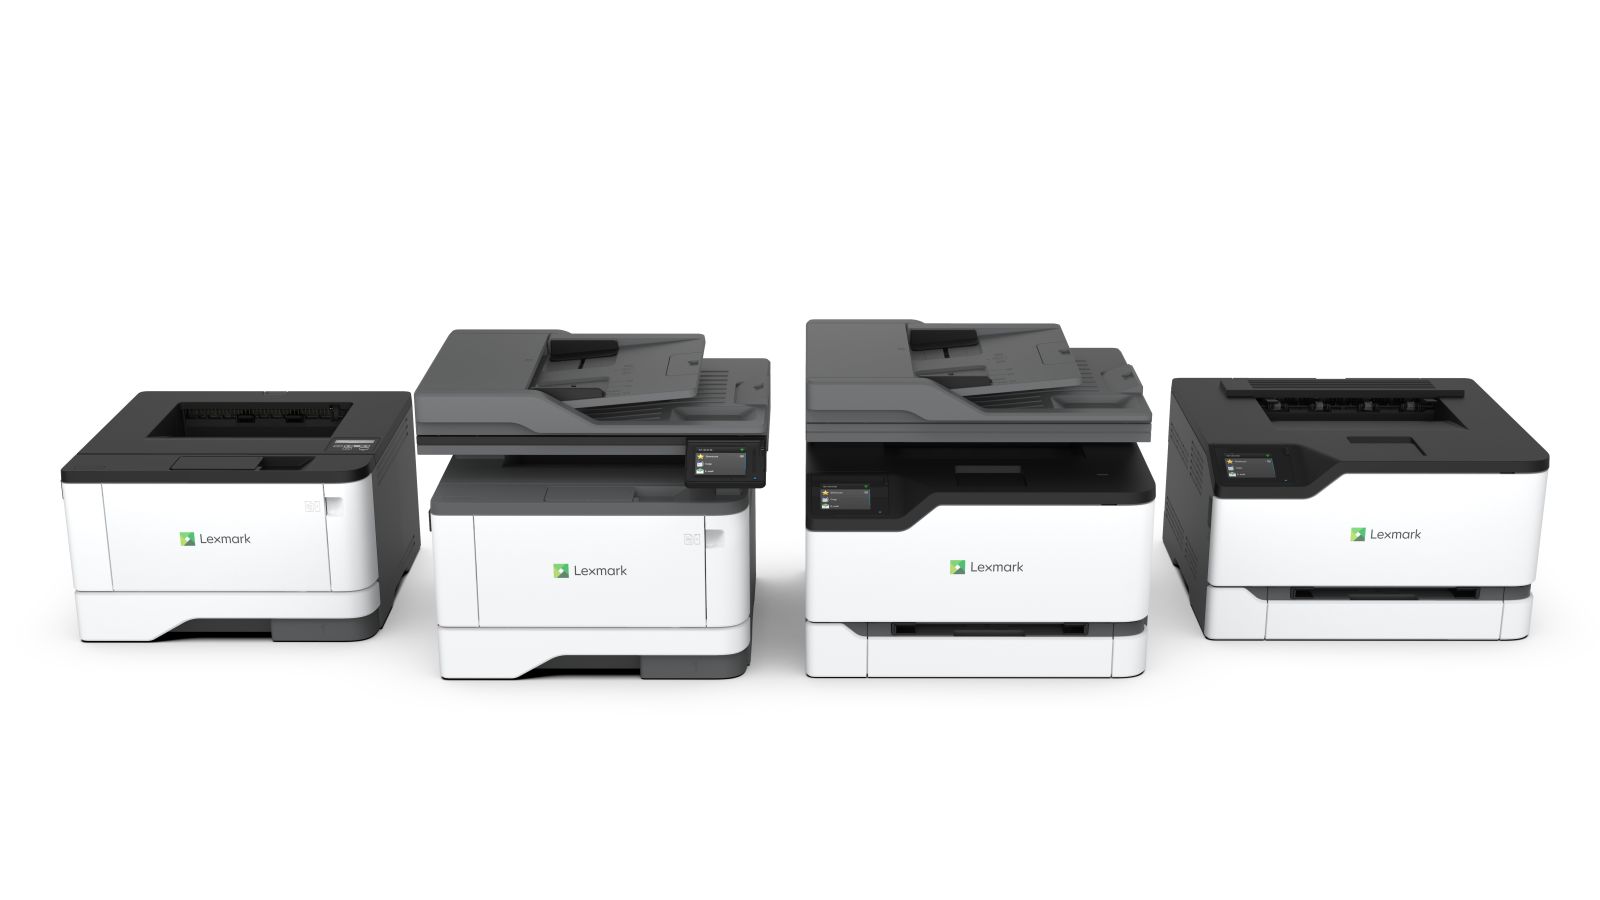 Die neuen Drucker und Multifunktionsgeräte der Serien 300 und 400 von Lexmark sind deutlich kompakter als ihre Vorgänger. (Bild: Lexmark)